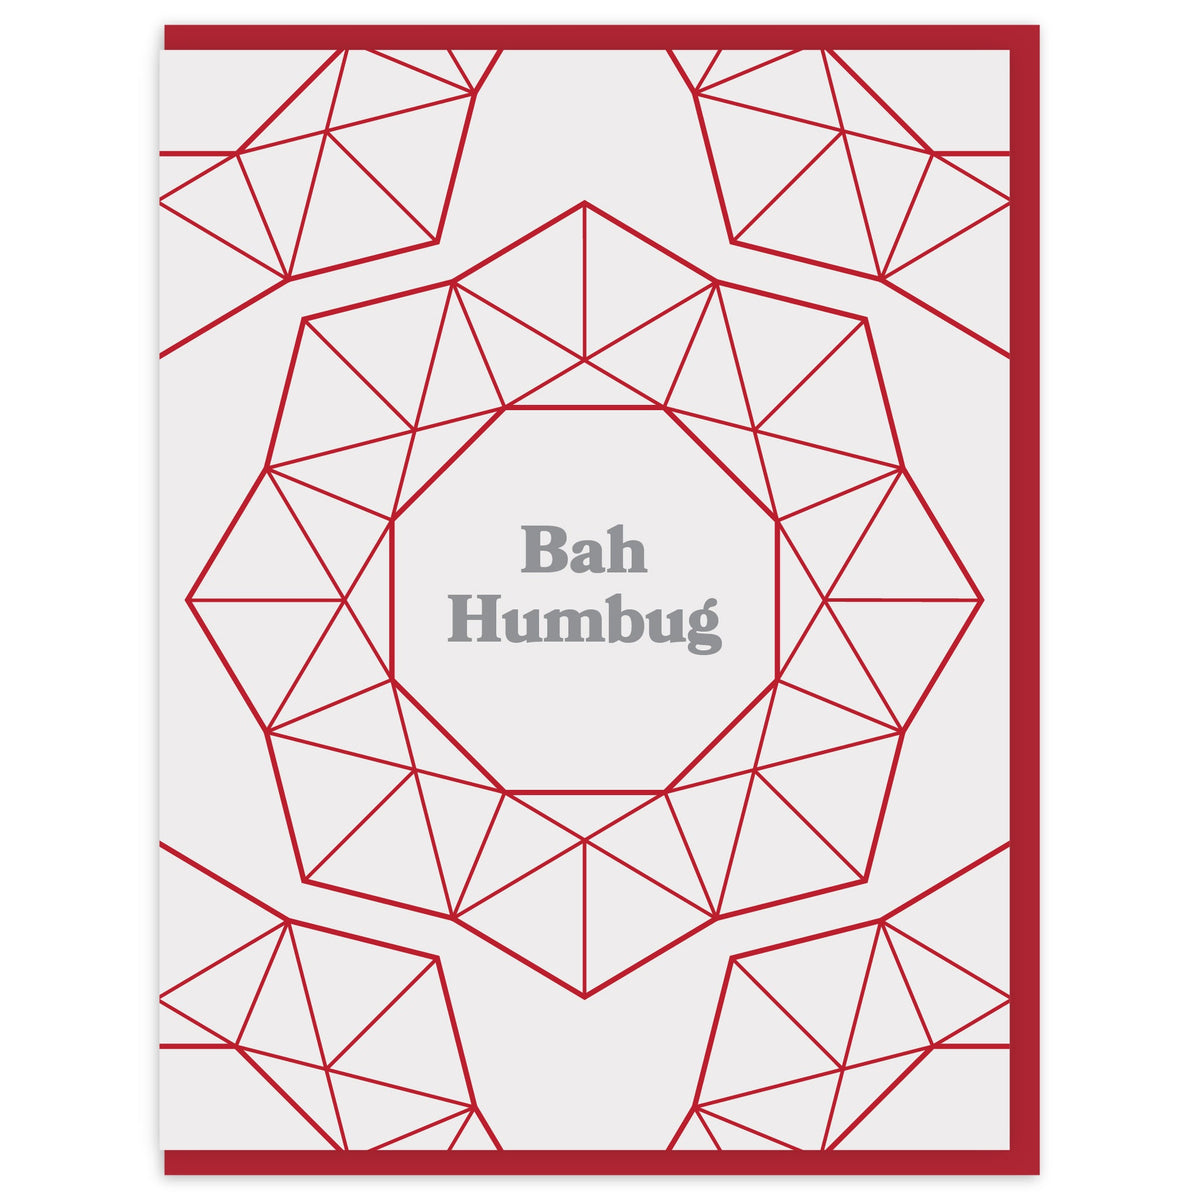 Bah Humbug - Boxed Set of 6